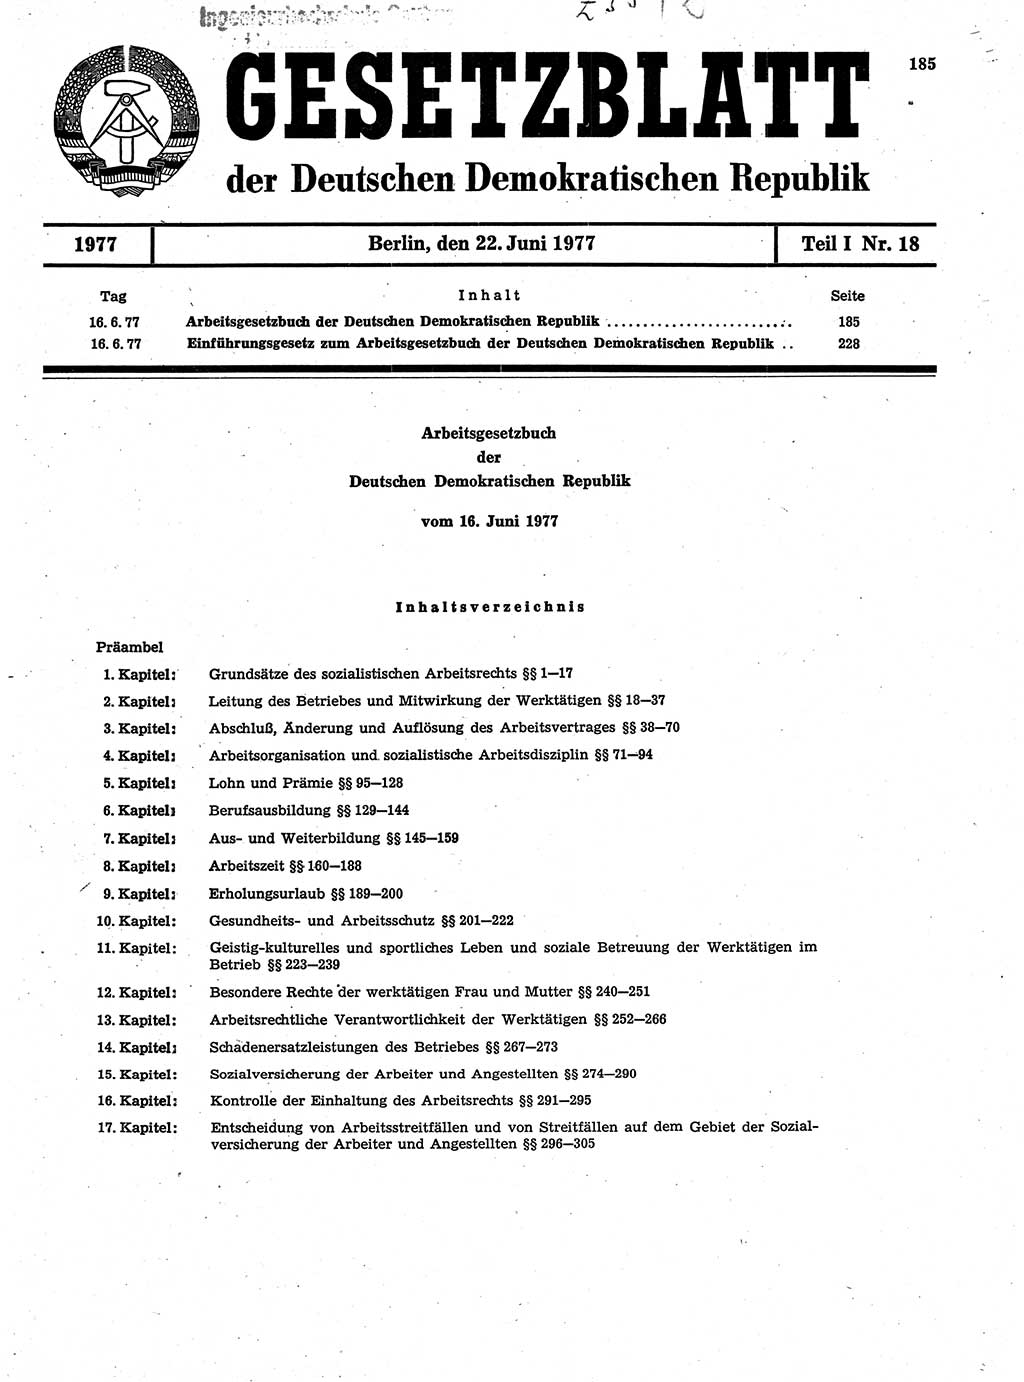 Gesetzblatt (GBl.) der Deutschen Demokratischen Republik (DDR) Teil Ⅰ 1977, Seite 185 (GBl. DDR Ⅰ 1977, S. 185)